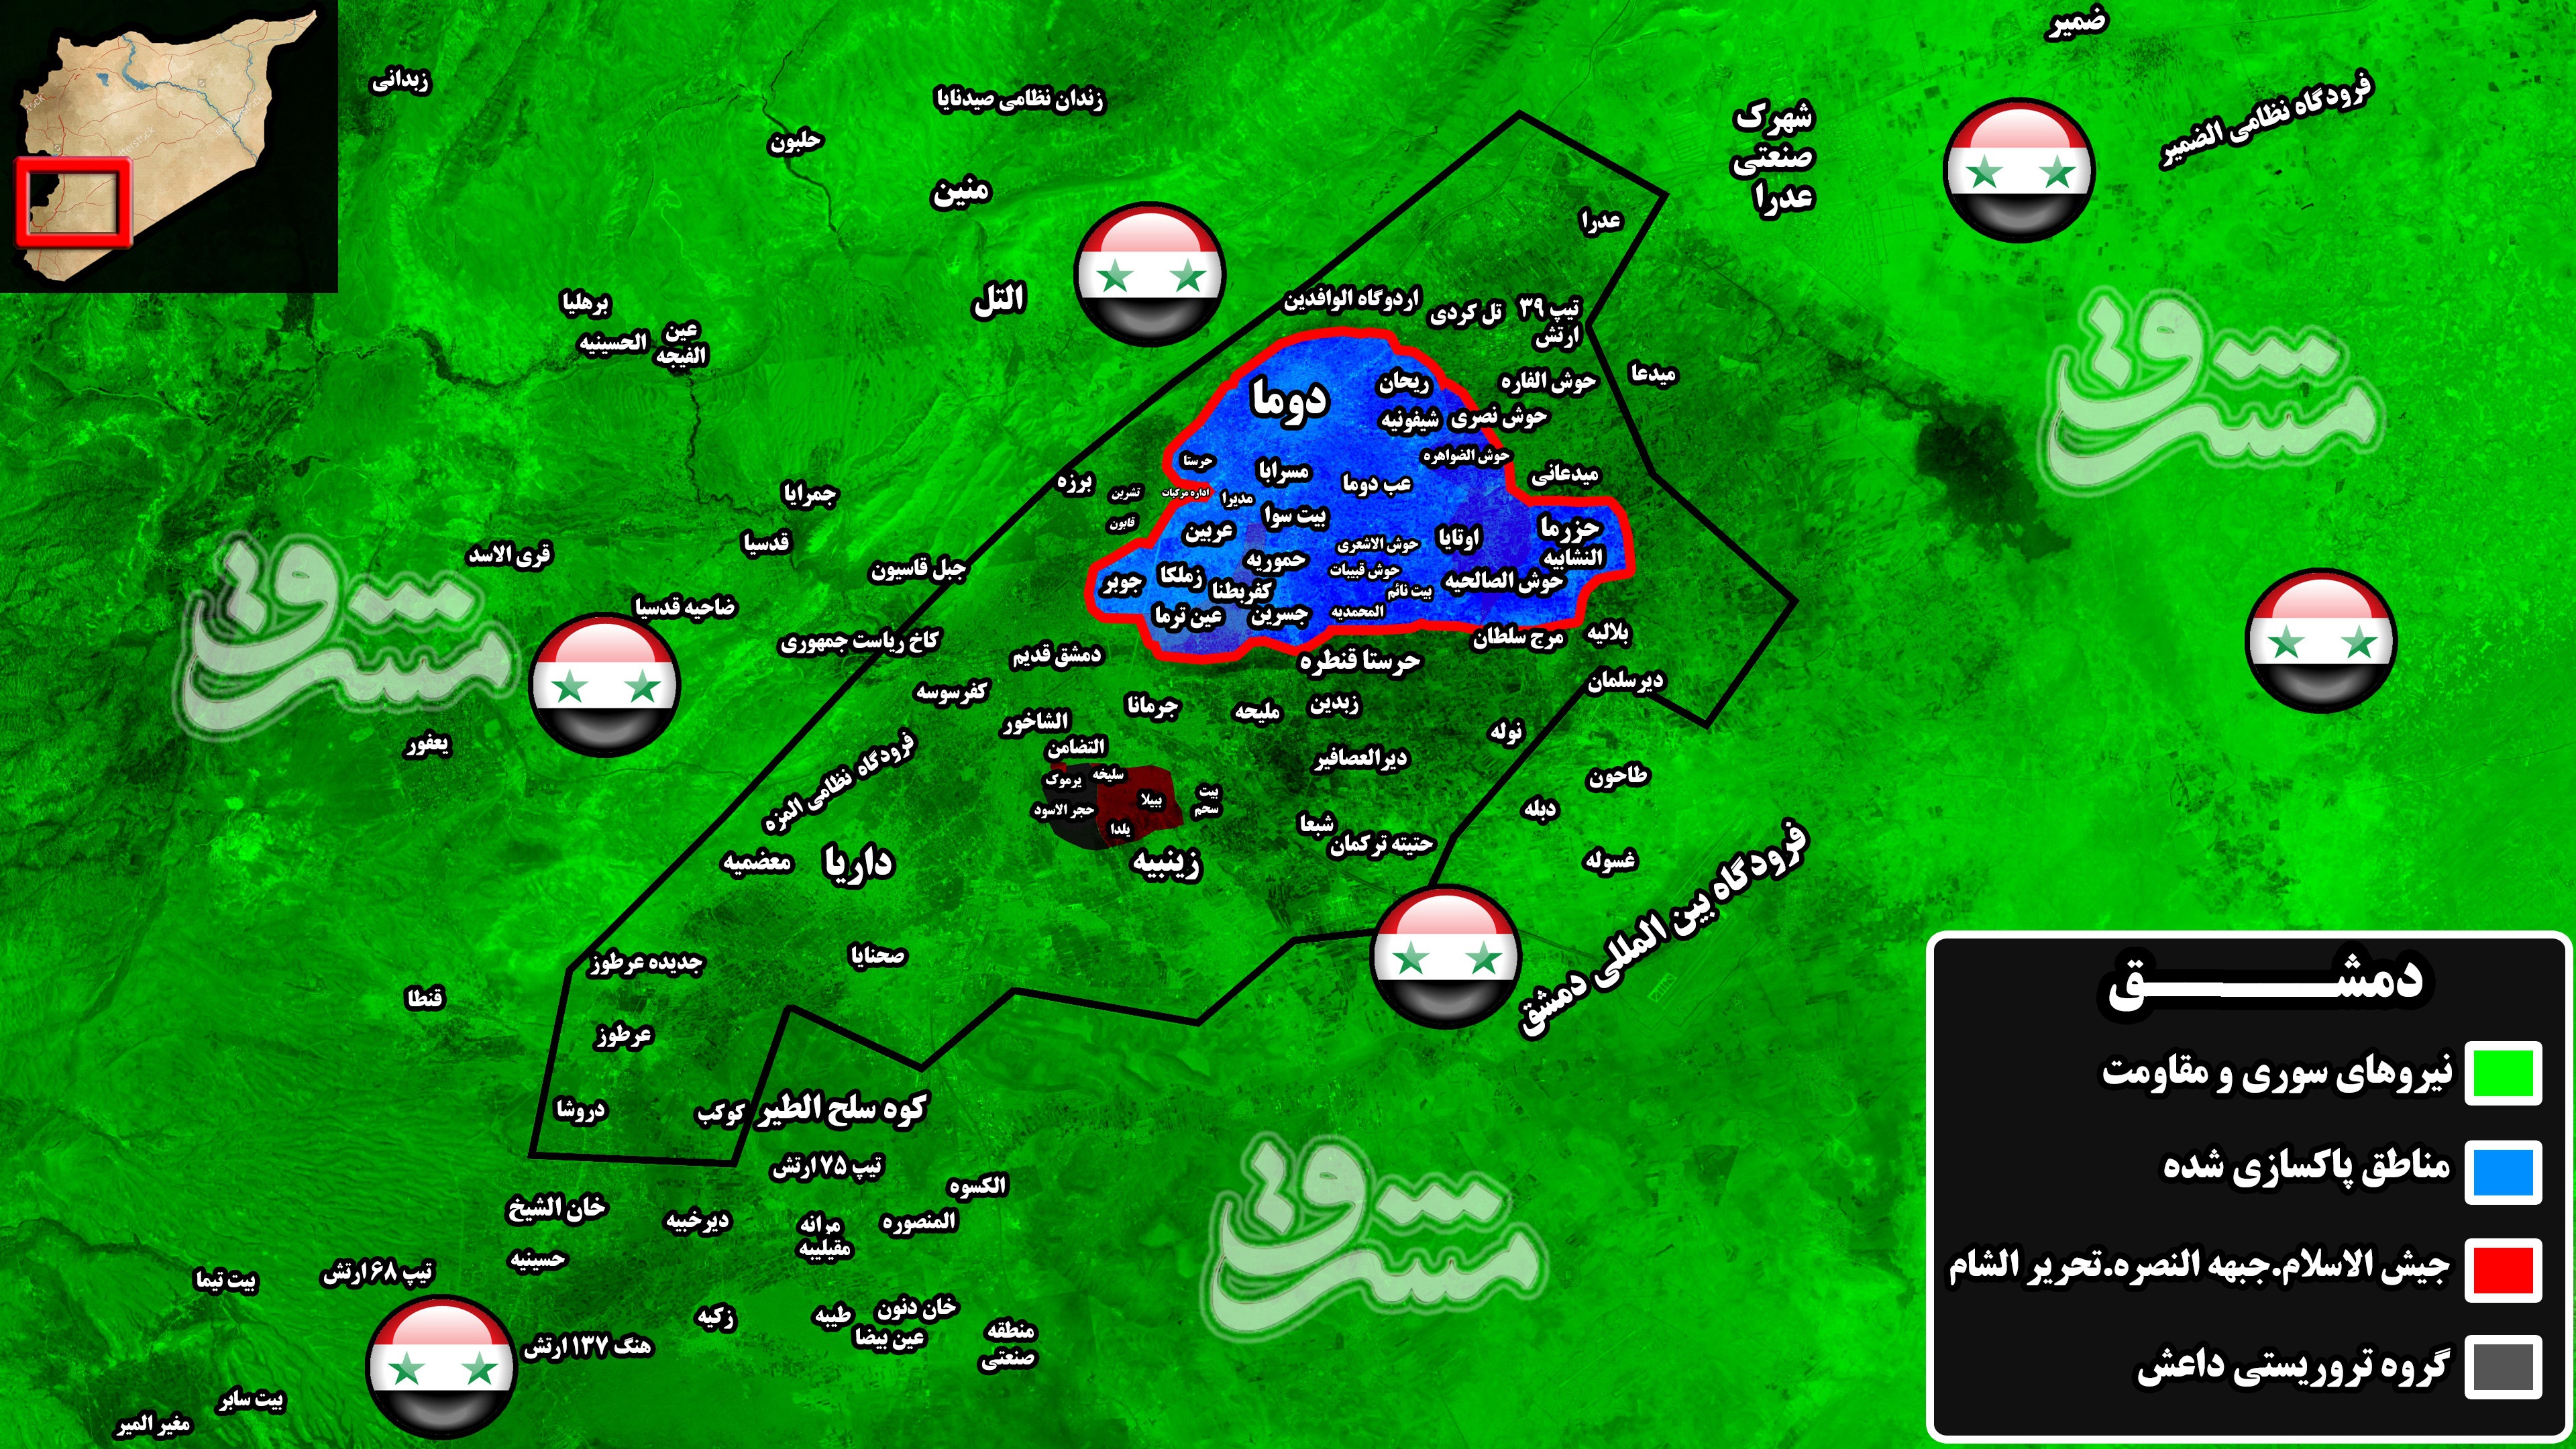 2232959 - آخرین تحولات میدانی جنوب دمشق پس از هزار و ۹۶۰ روز اشغالگری/ ۷۸ شهید و زخمی در حملات خمپاره ای داعش به پایتخت + نقشه میدانی